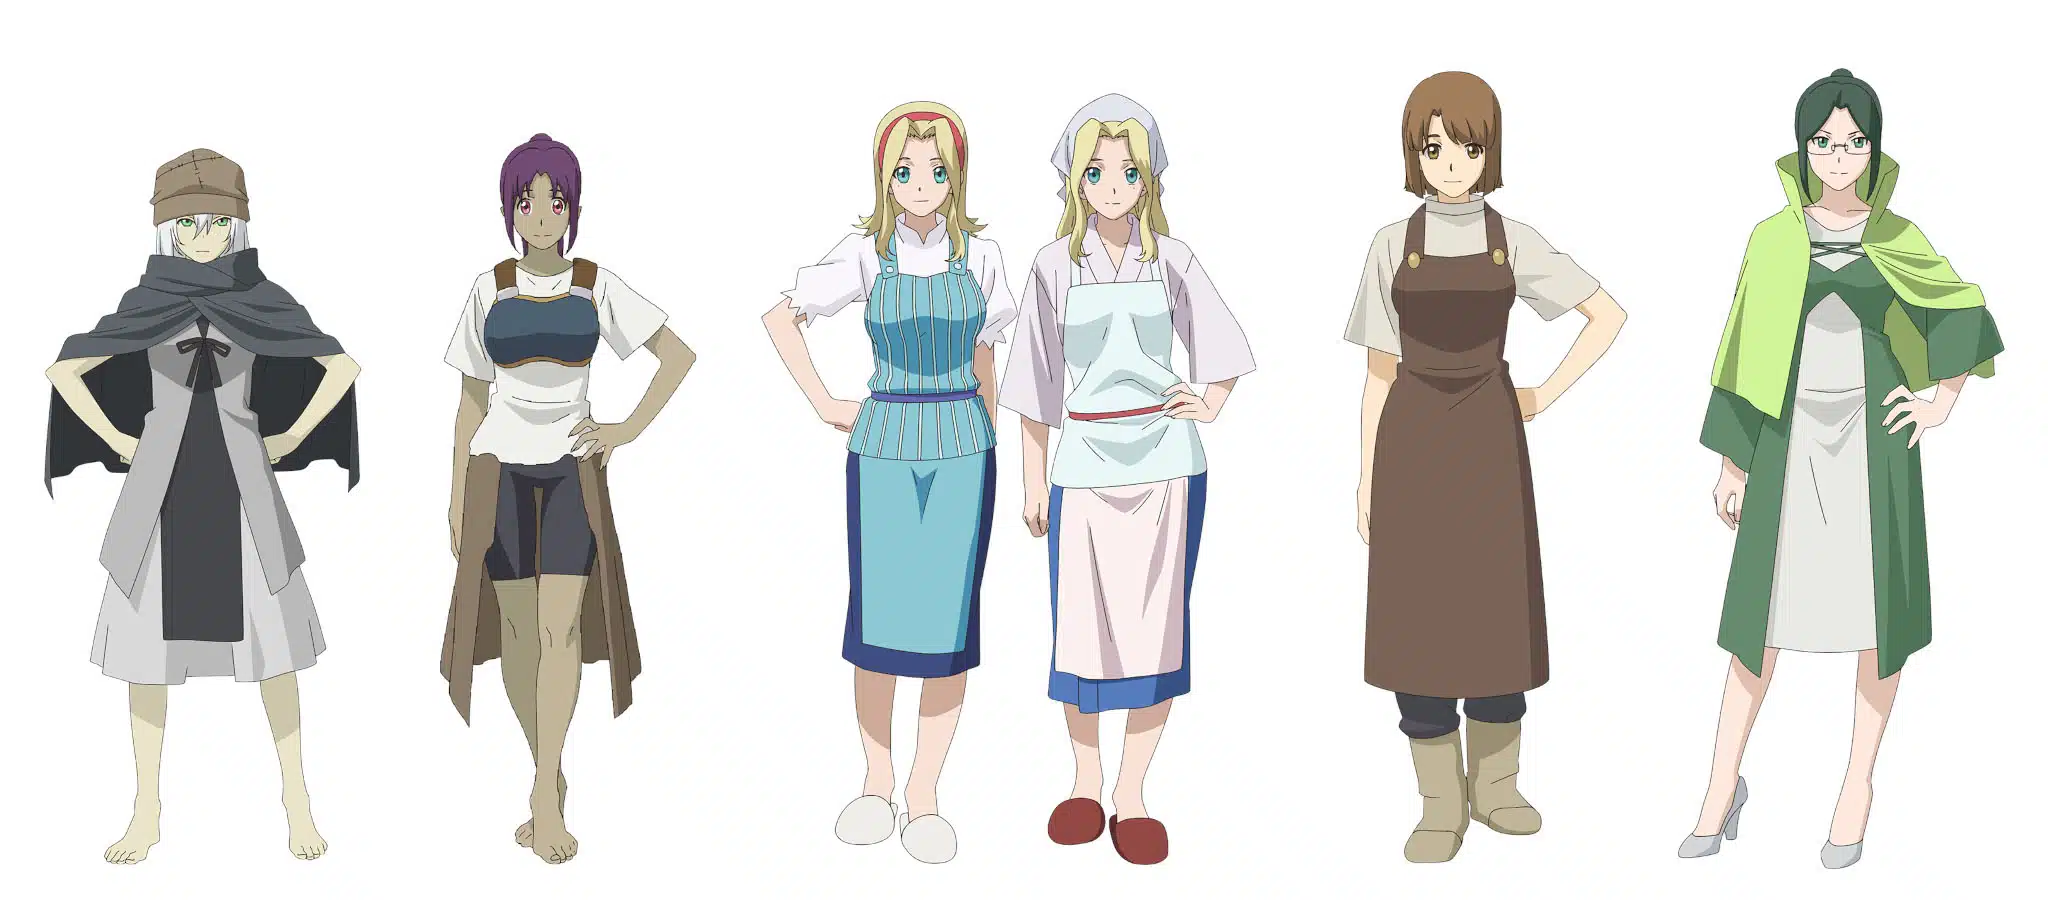 Character design de Hobsei, Hobsato, des jumelles, de la forgeronne et de l'alchimiste pour l'anime Re:Monster.